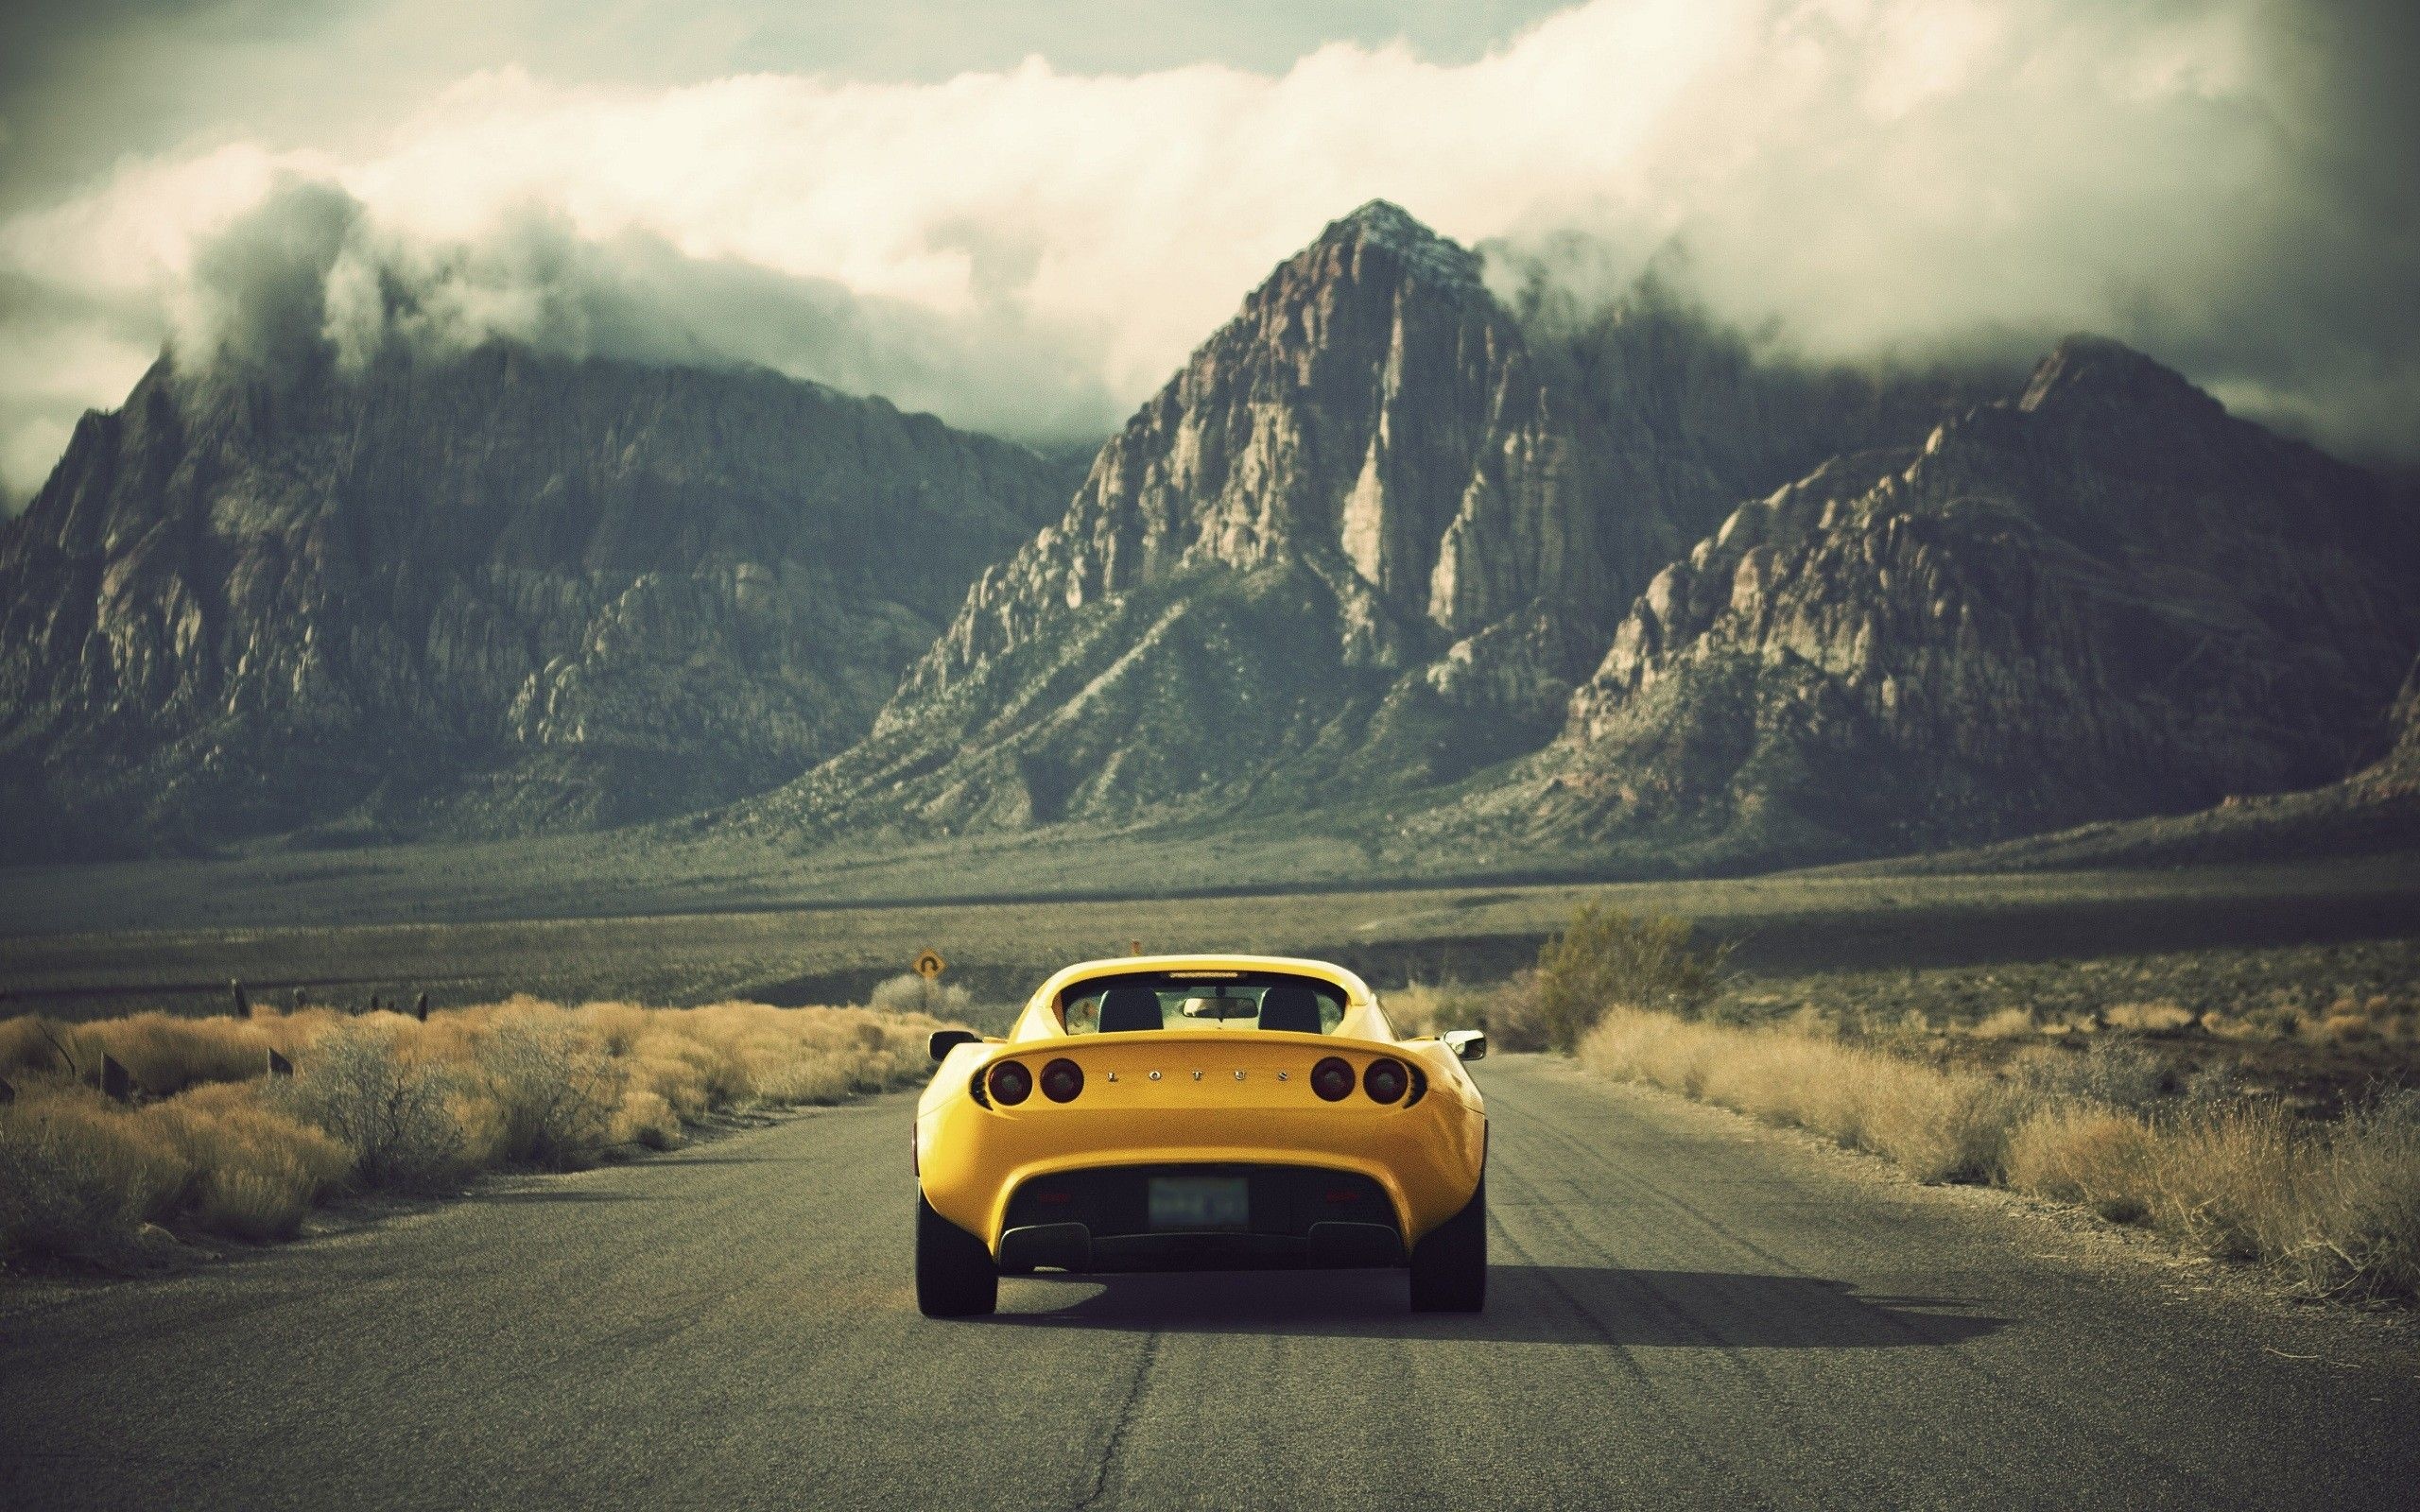 Lotus car, Auto excellence, Iconic design, Automotive perfection, 2560x1600 HD Desktop